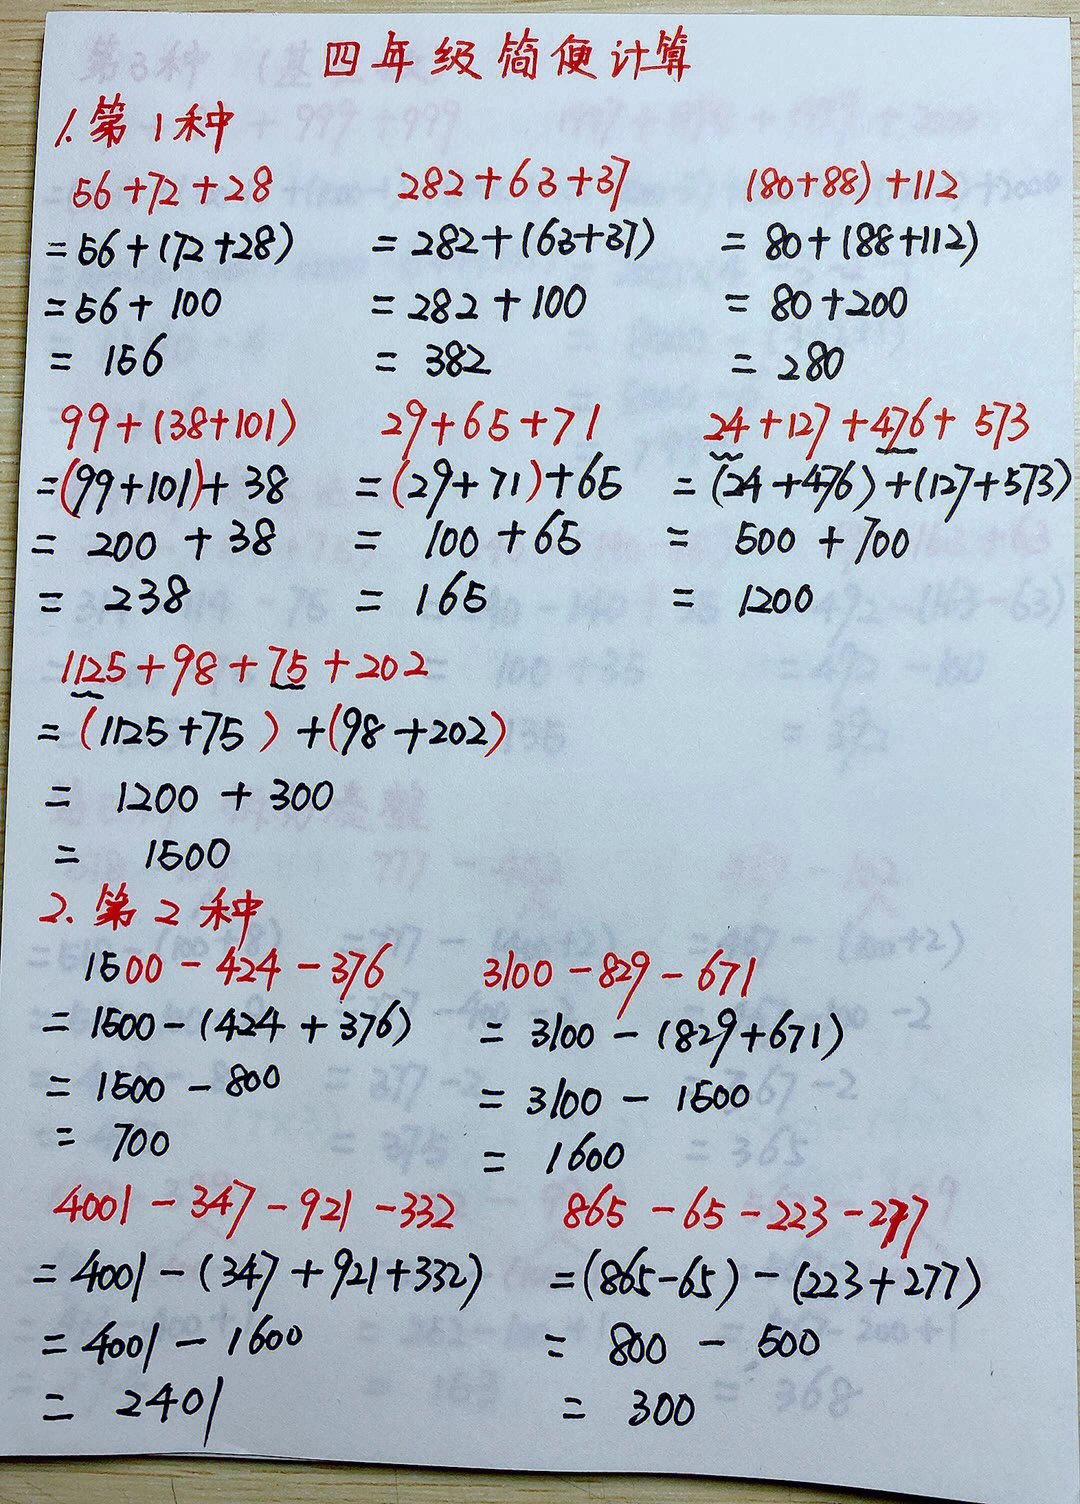 四年级上册数学简便计算,10种方法解答